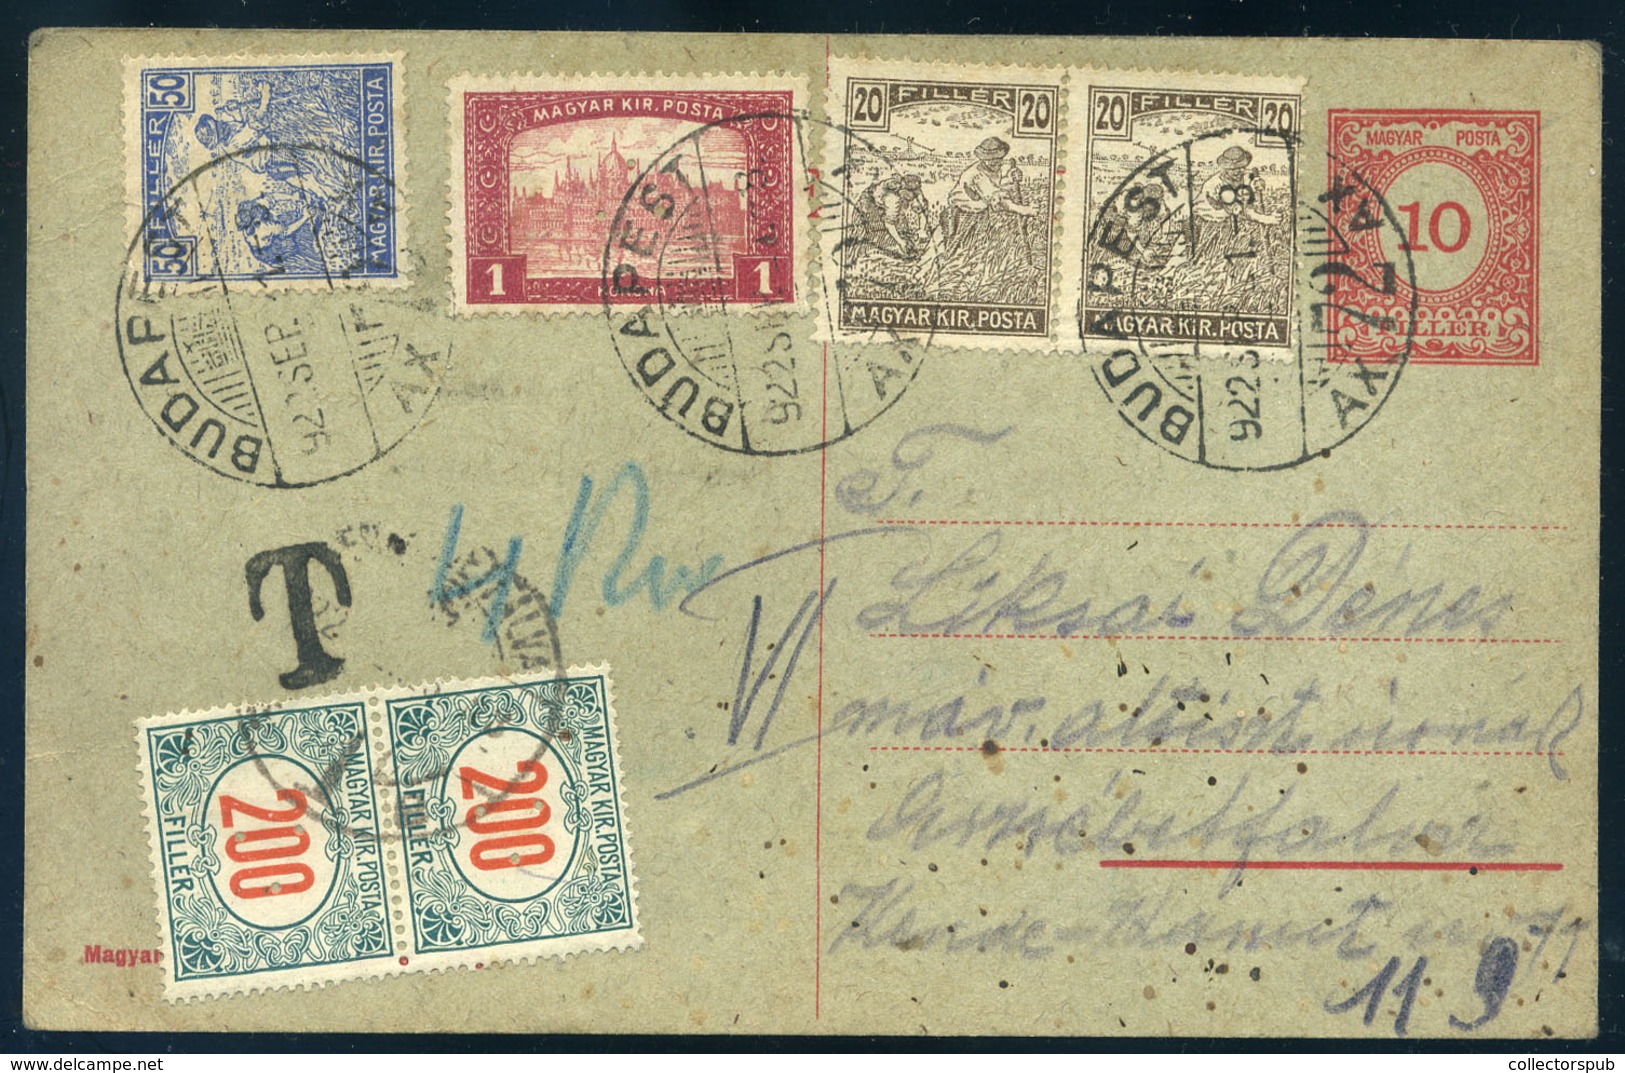 89764 BUDAPEST 1922. Kiegészített Infla Díjjegyes Levlap, Erzsébetfalvára Küldve, Portózva - Lettres & Documents